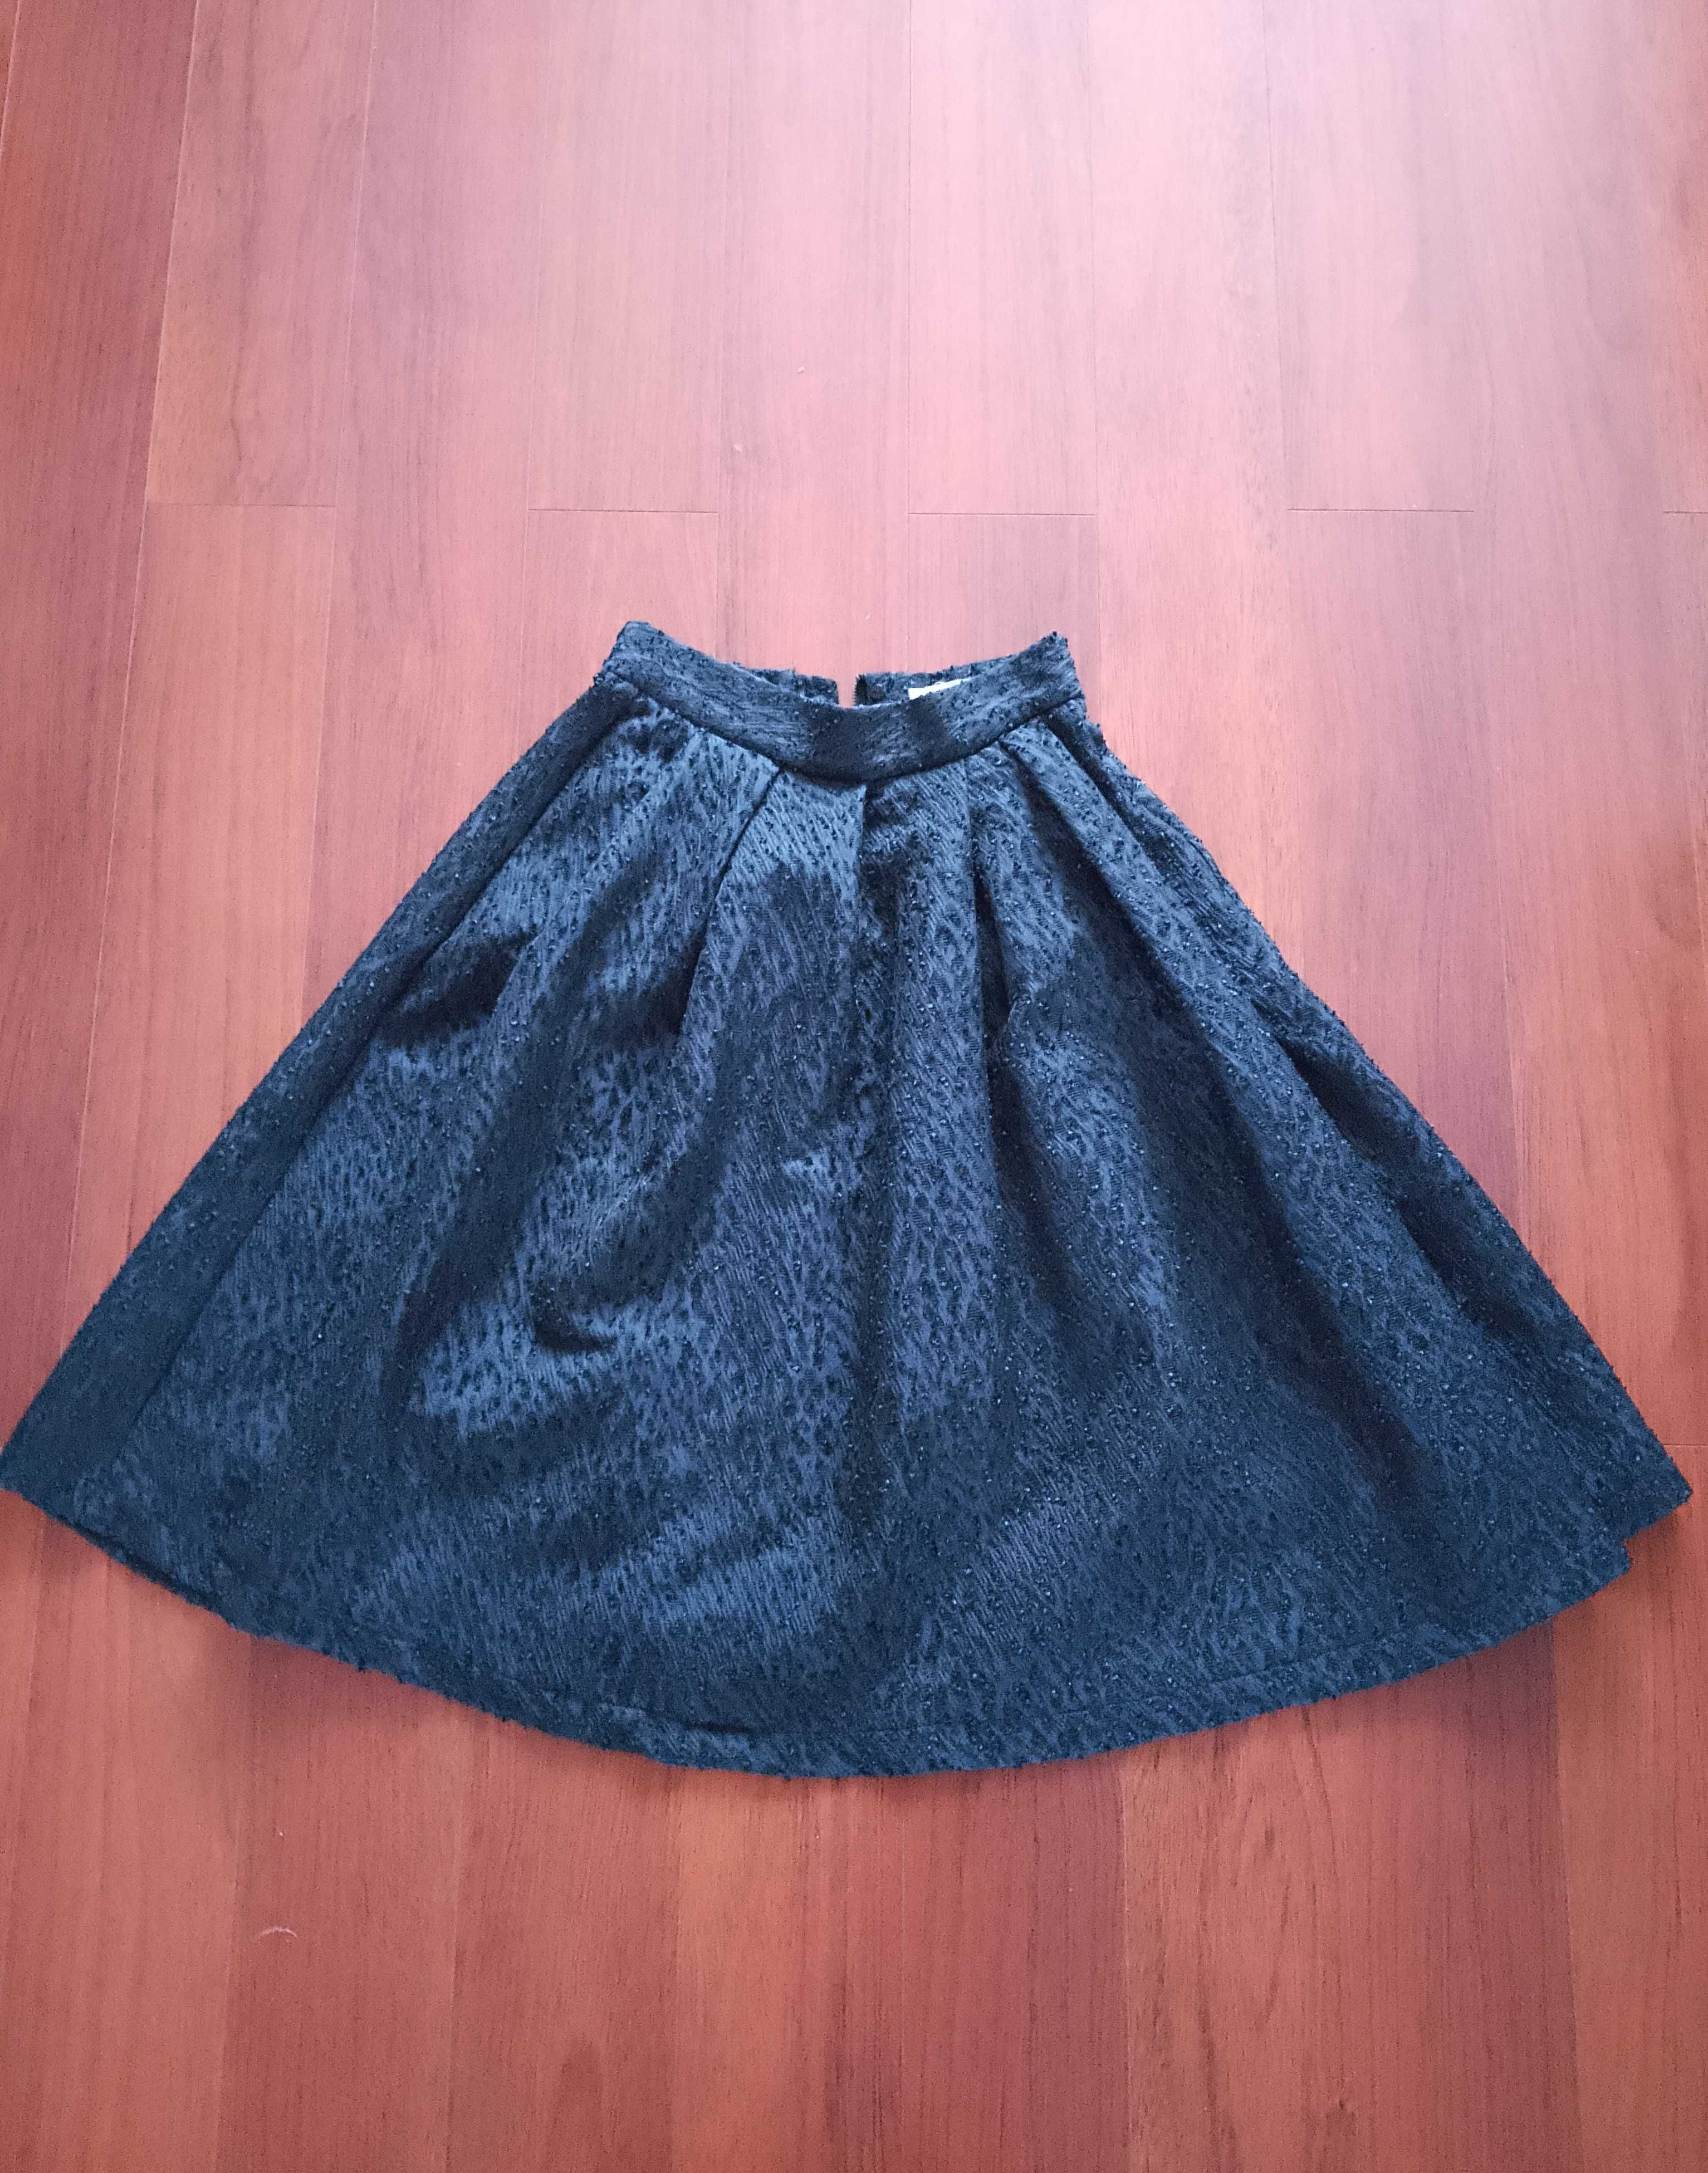 elegancka rozkloszowana spódnica H&M 36, ciekawy wzór kieszenie, fałdy